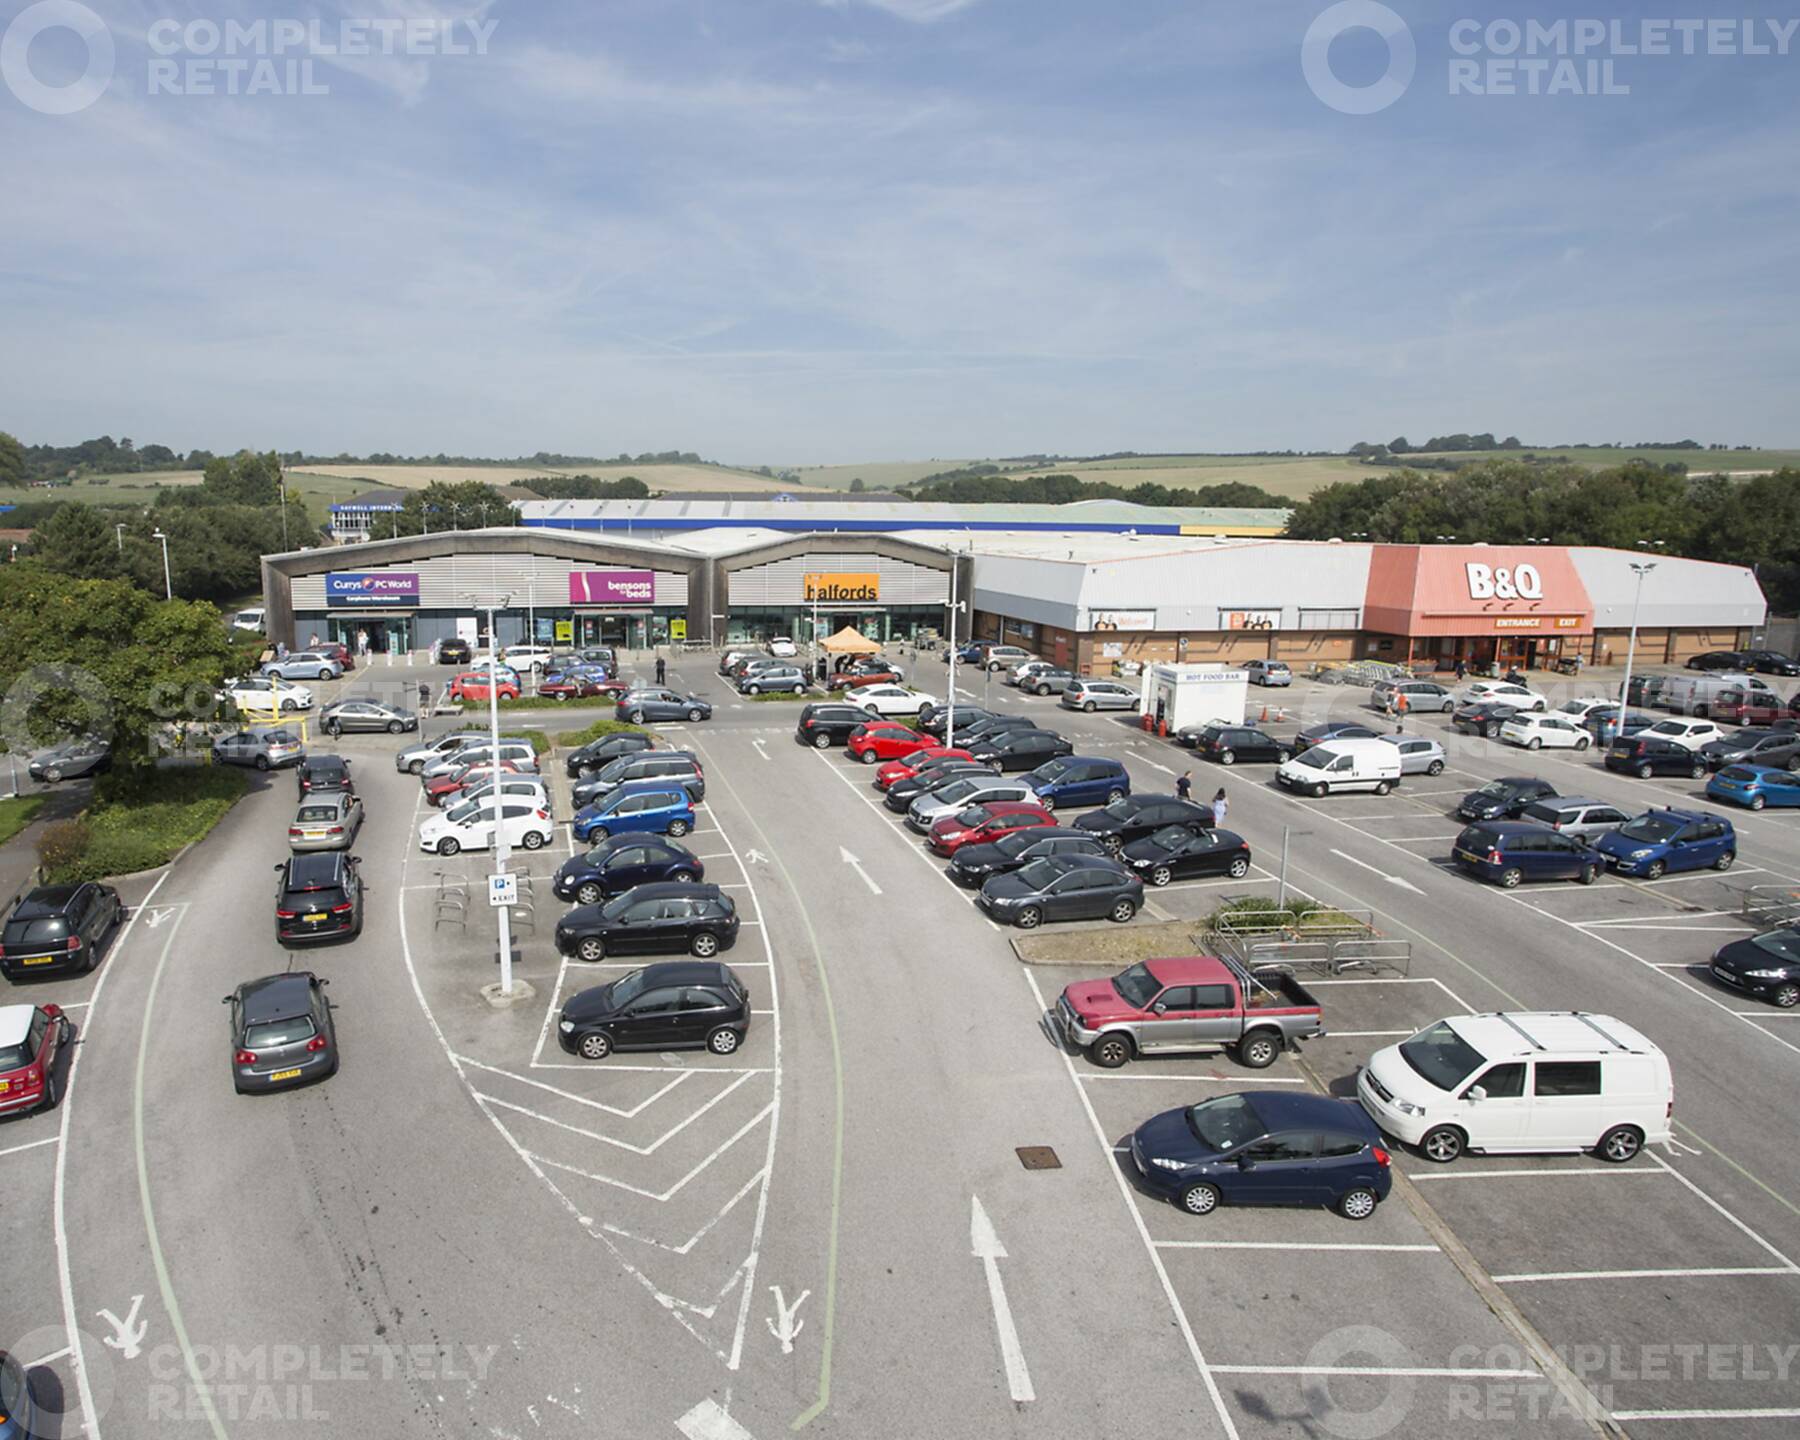 Downlands Retail Park